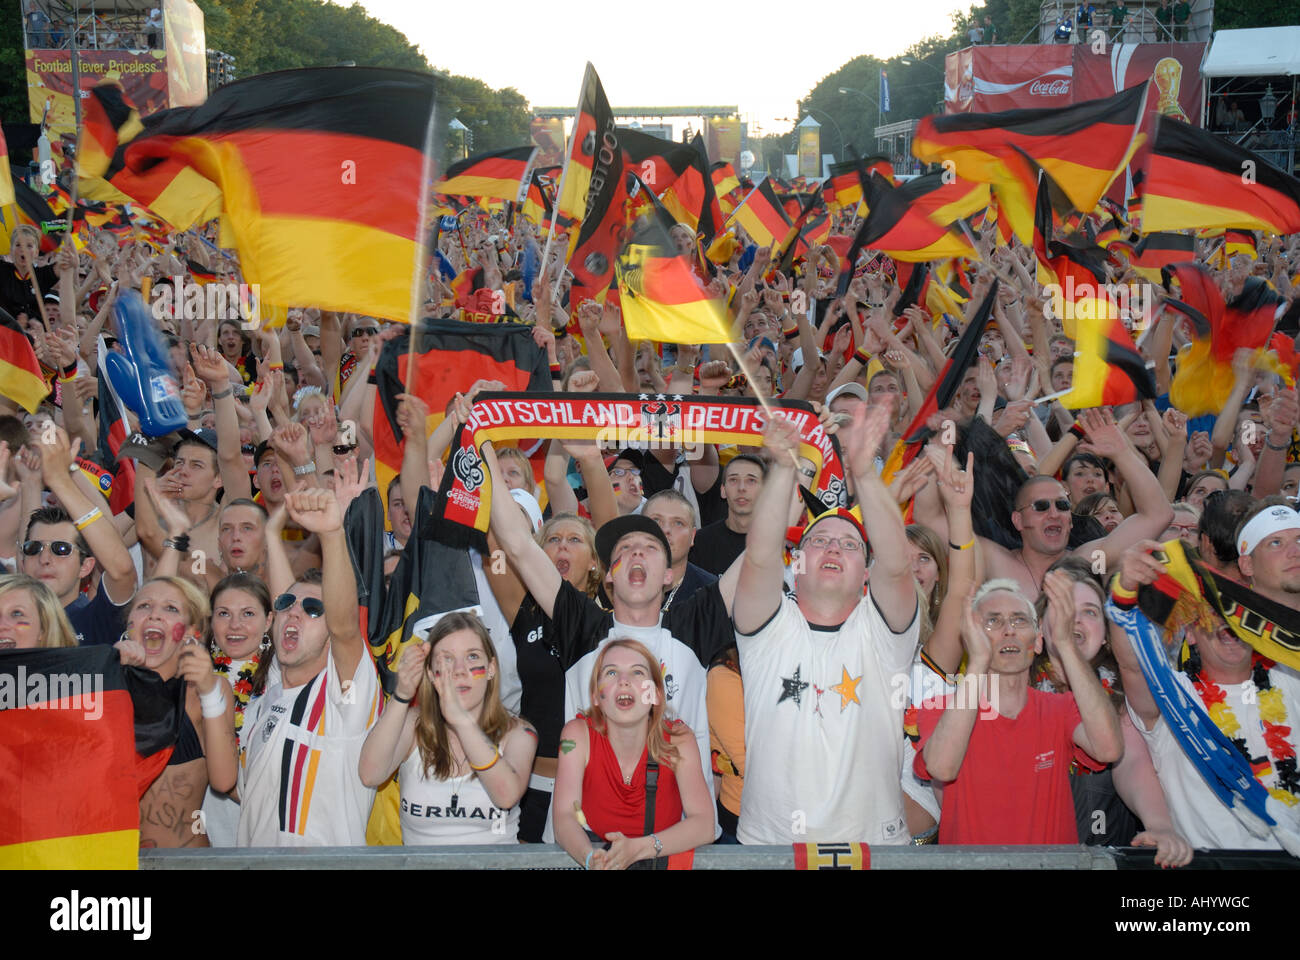 German fans waving flags in Berlin Stock Photo